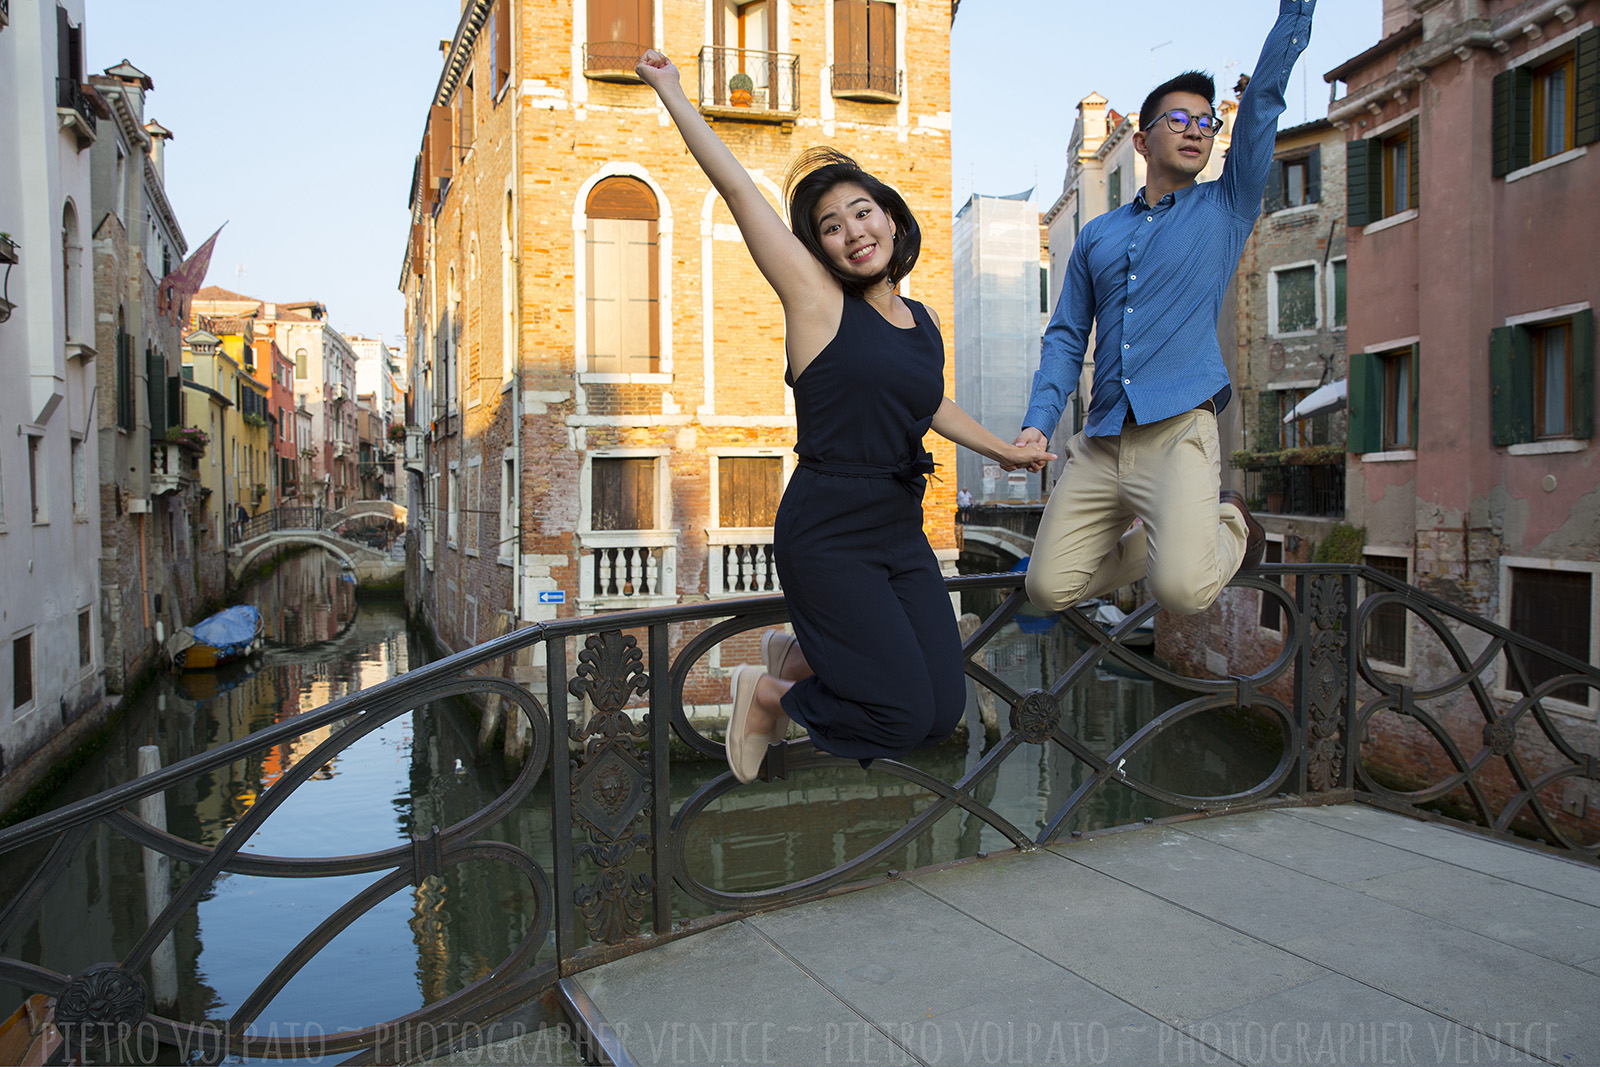 Fotografo a Venezia per vacanza coppia